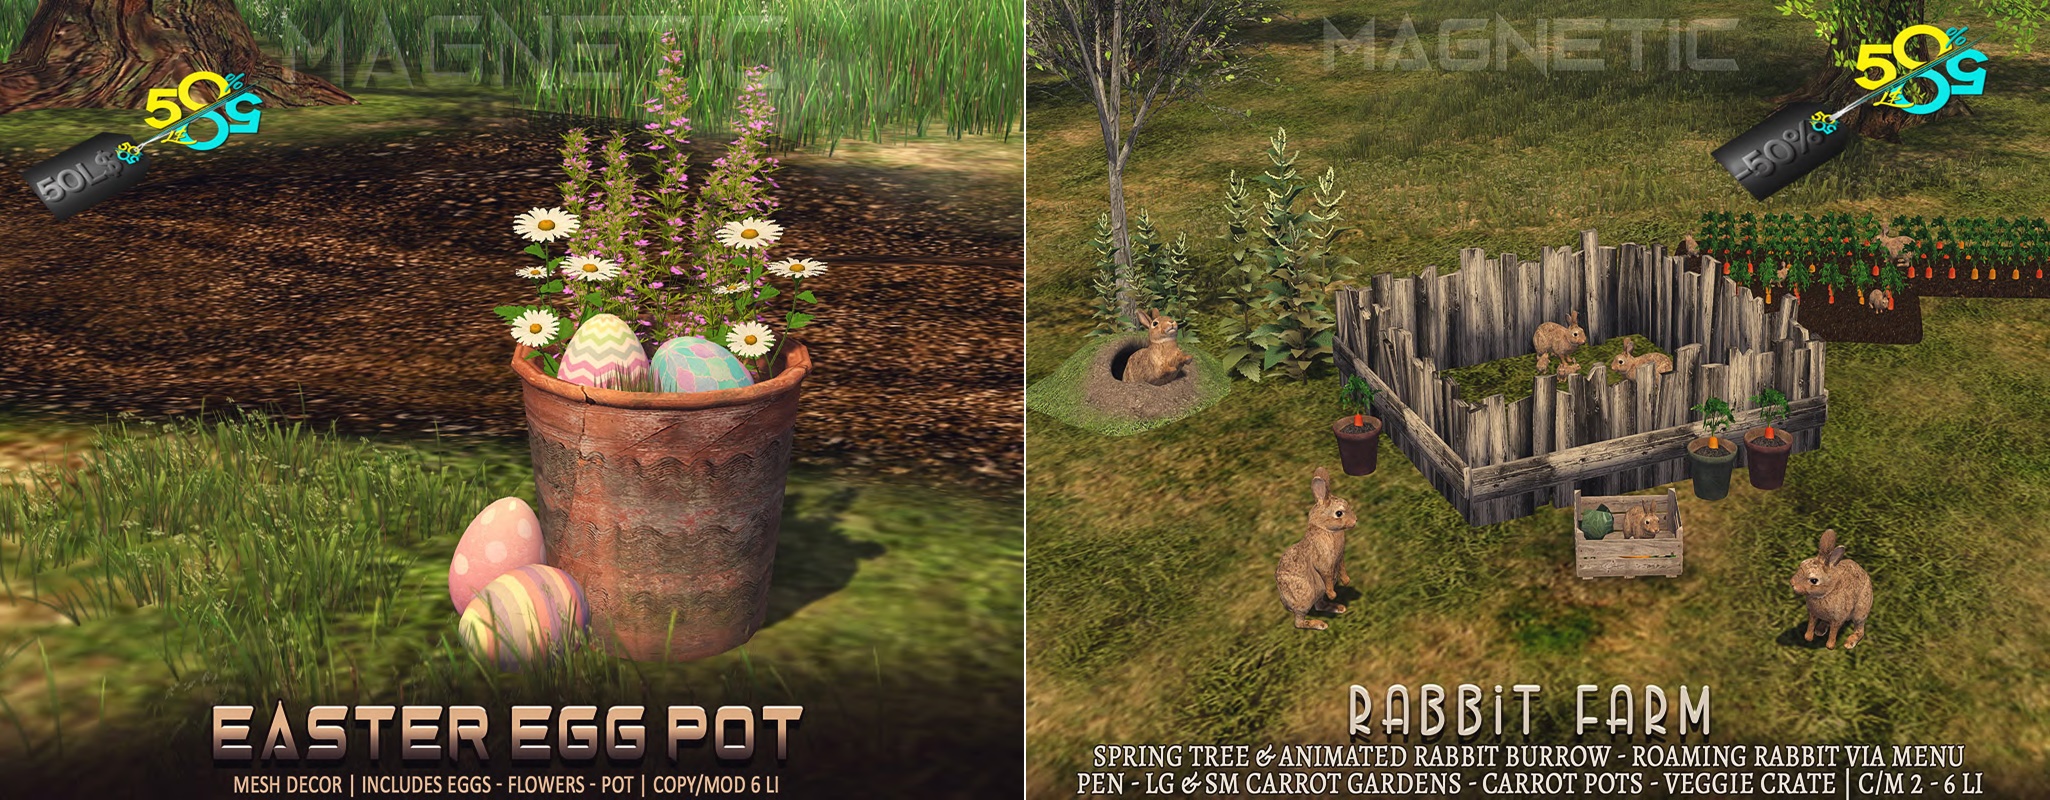 Magnetic – Easter Egg Pot & Rabbit Farm